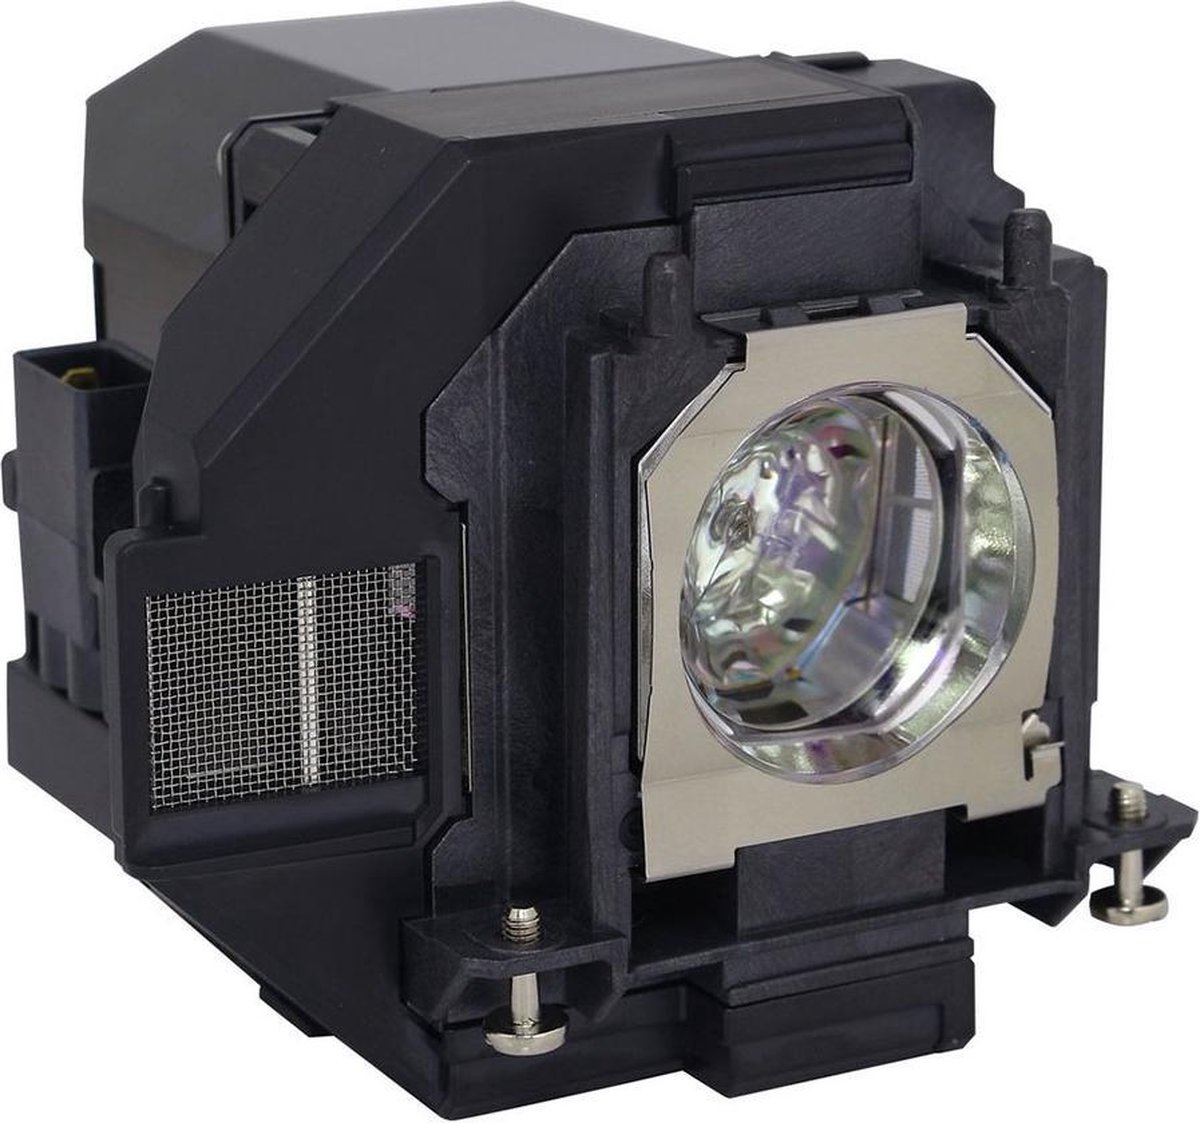 Beamerlamp geschikt voor de EPSON H881A beamer, lamp code LP96 / V13H010L96. Bevat originele UHP lamp, prestaties gelijk aan origineel.